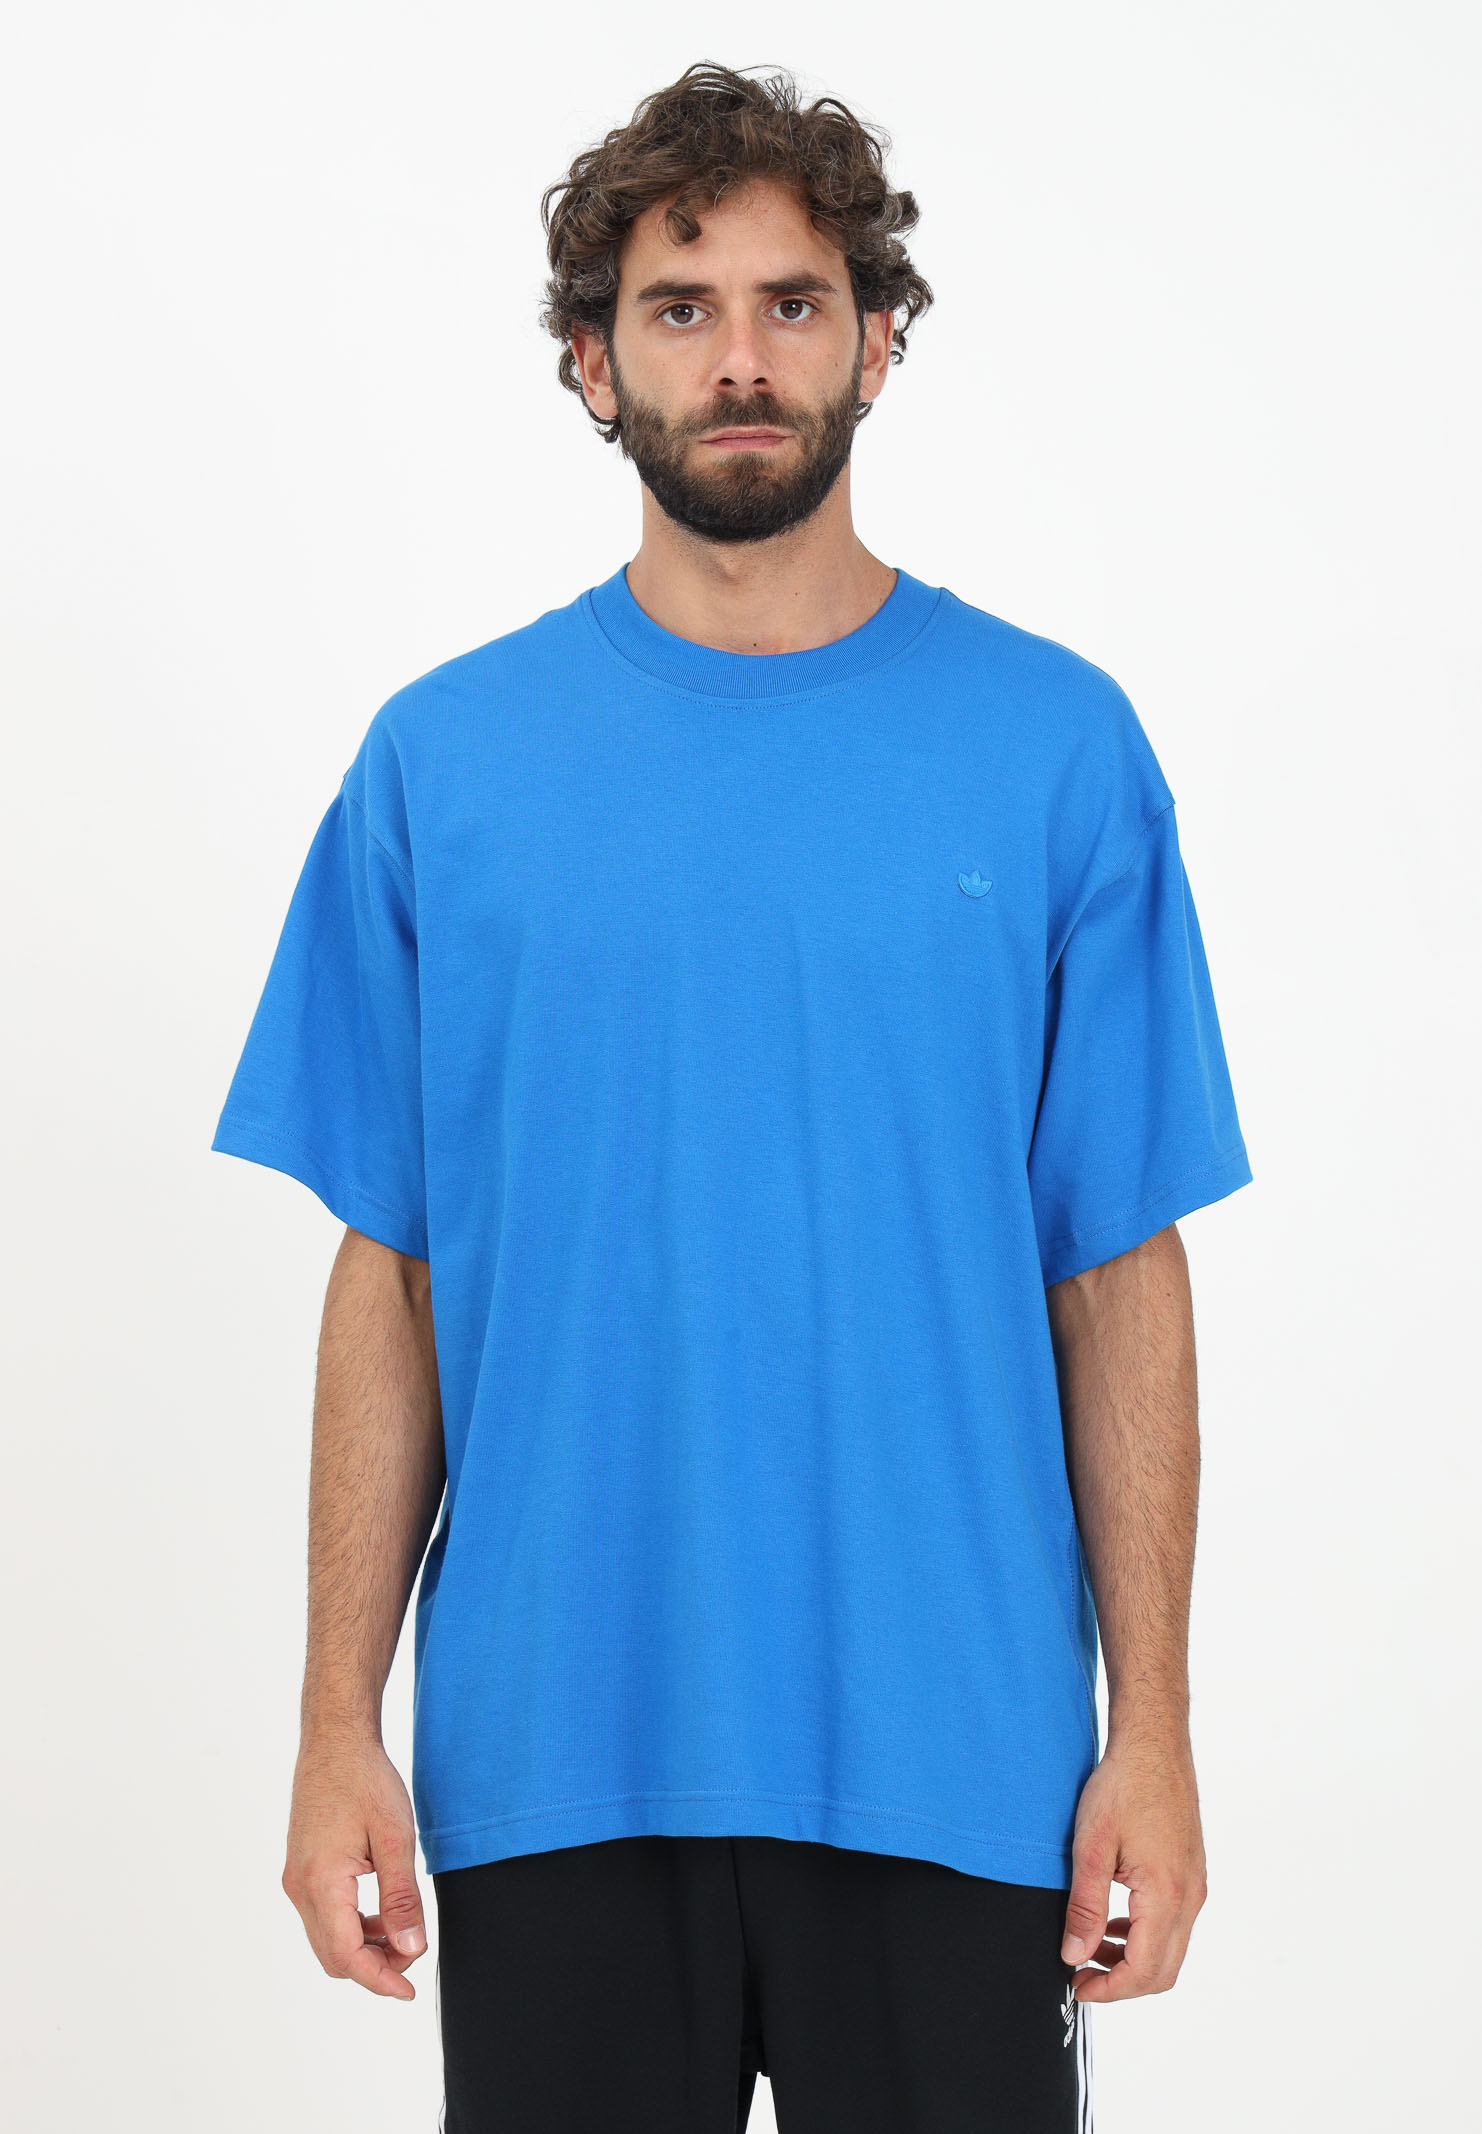 Adicolor Contempo light blue men's t-shirt - ADIDAS ORIGINALS - Pavidas